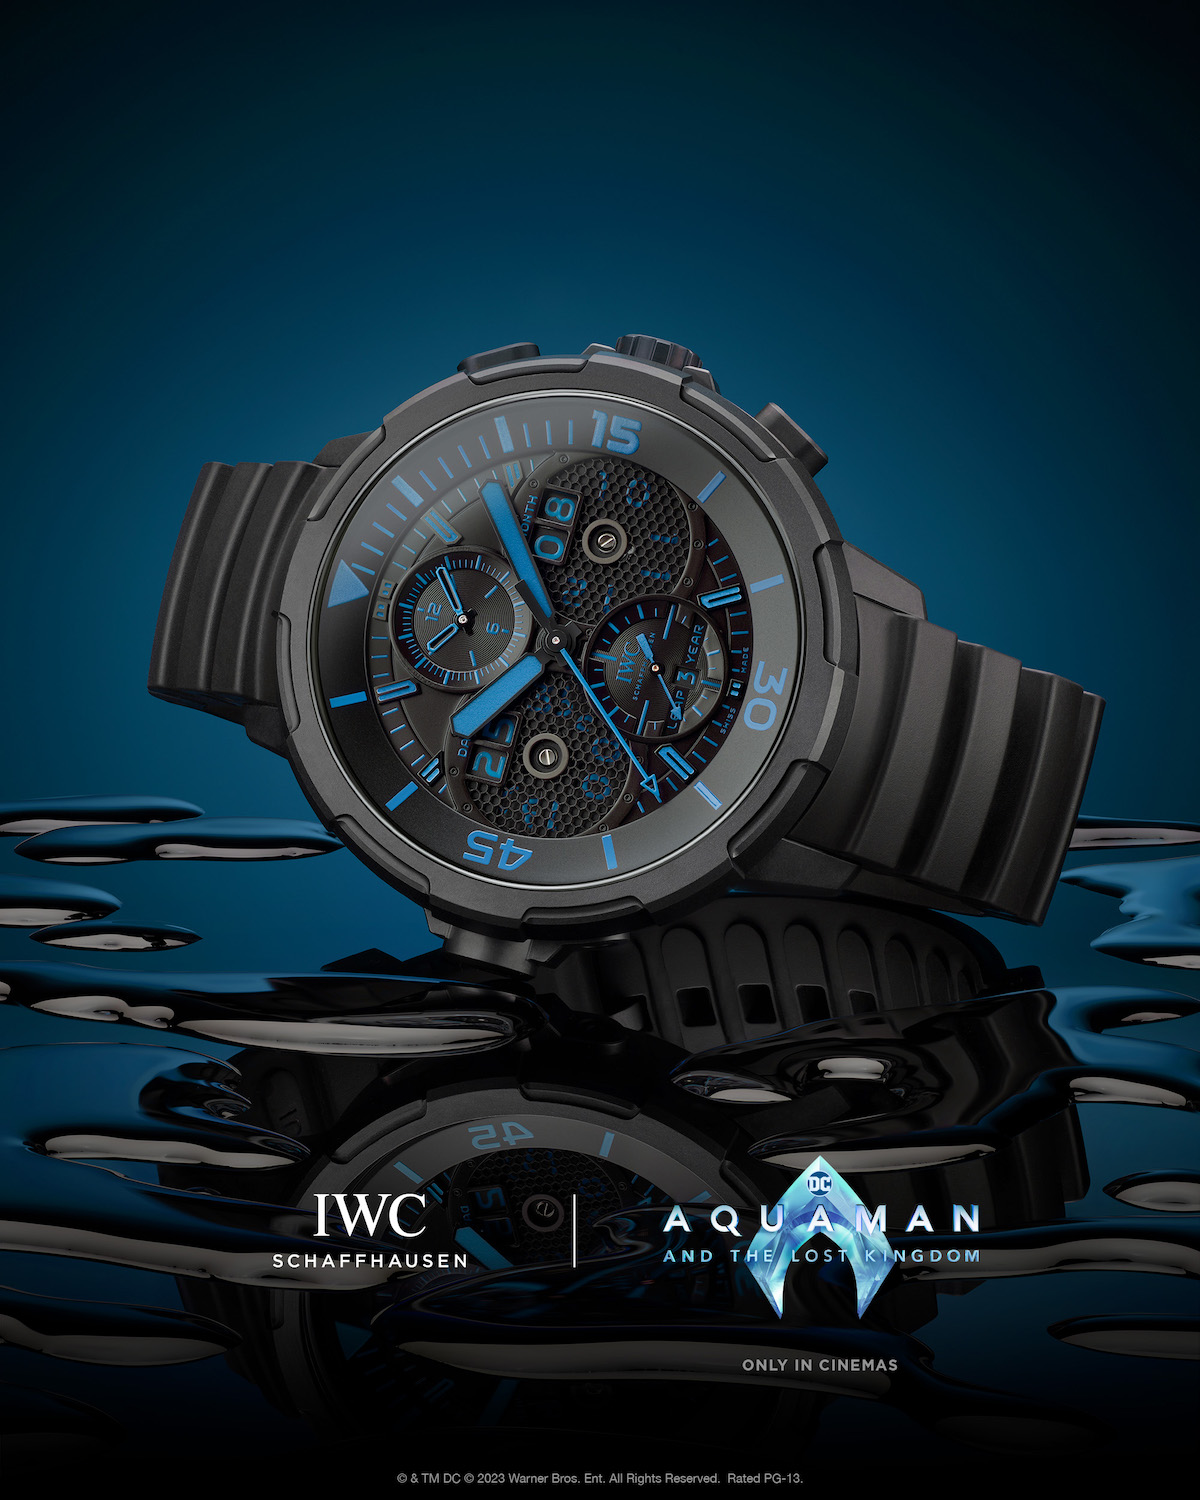 IWC Aquatimer Aquaman 2 5